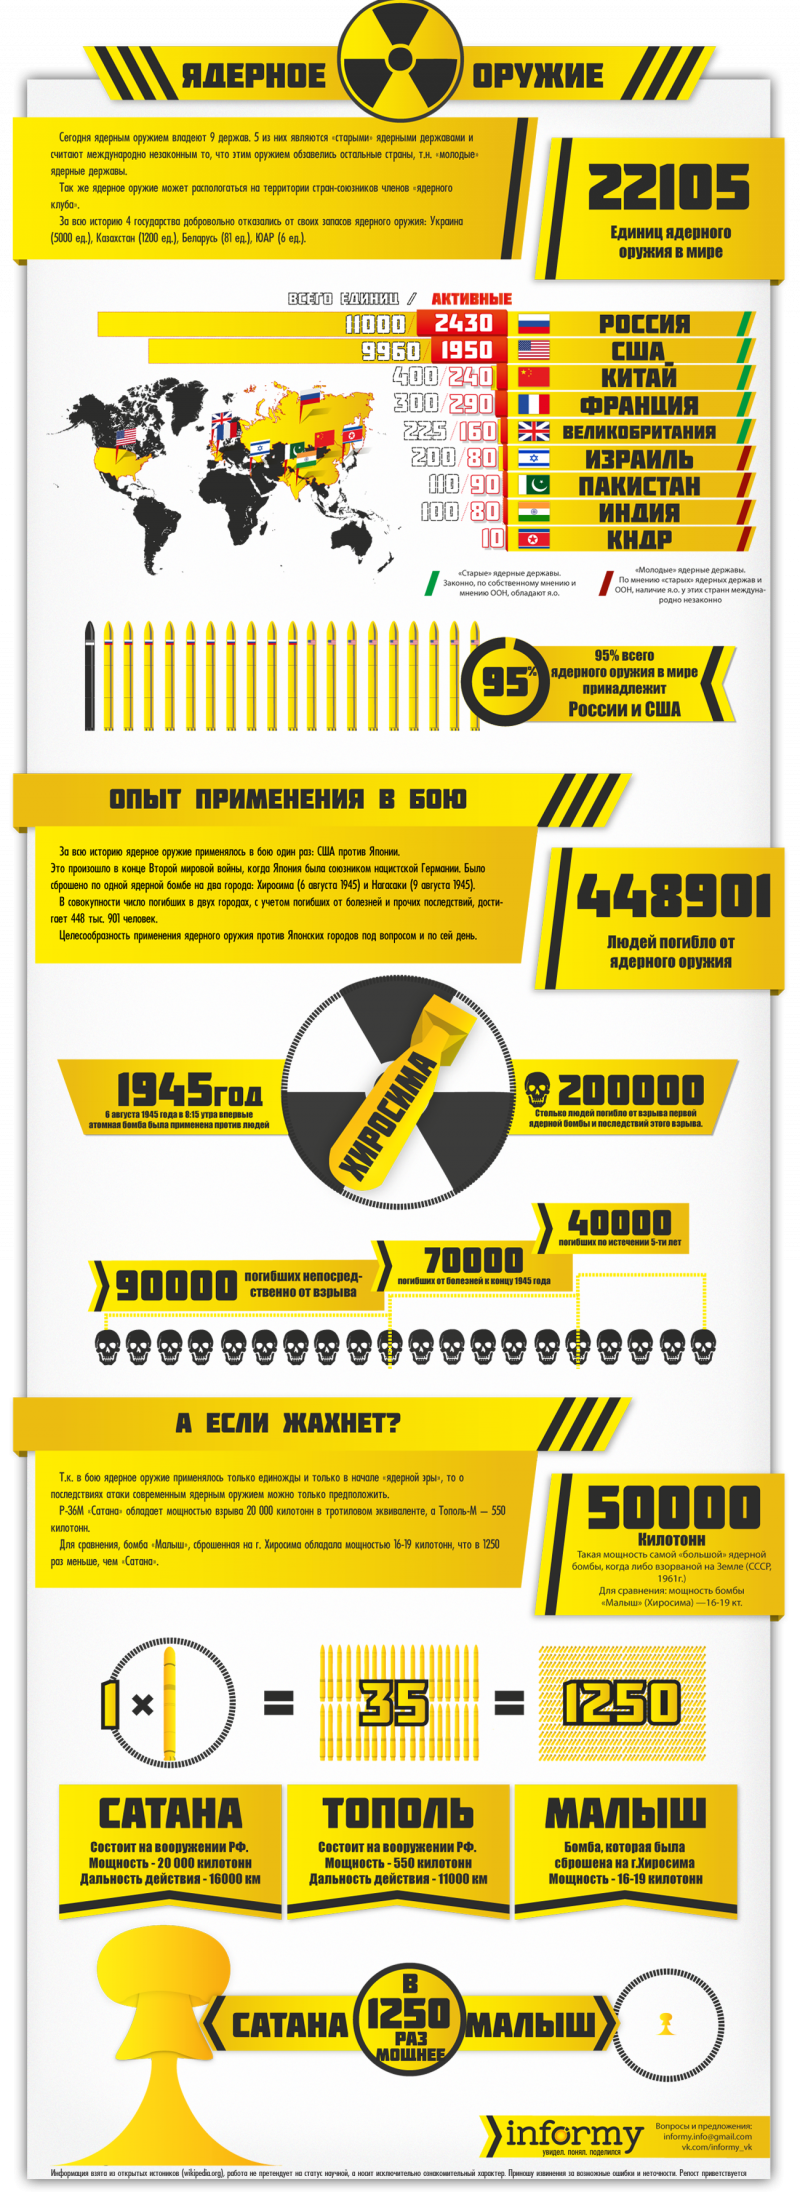 Распространение ядерного оружия в мире. Инфографика